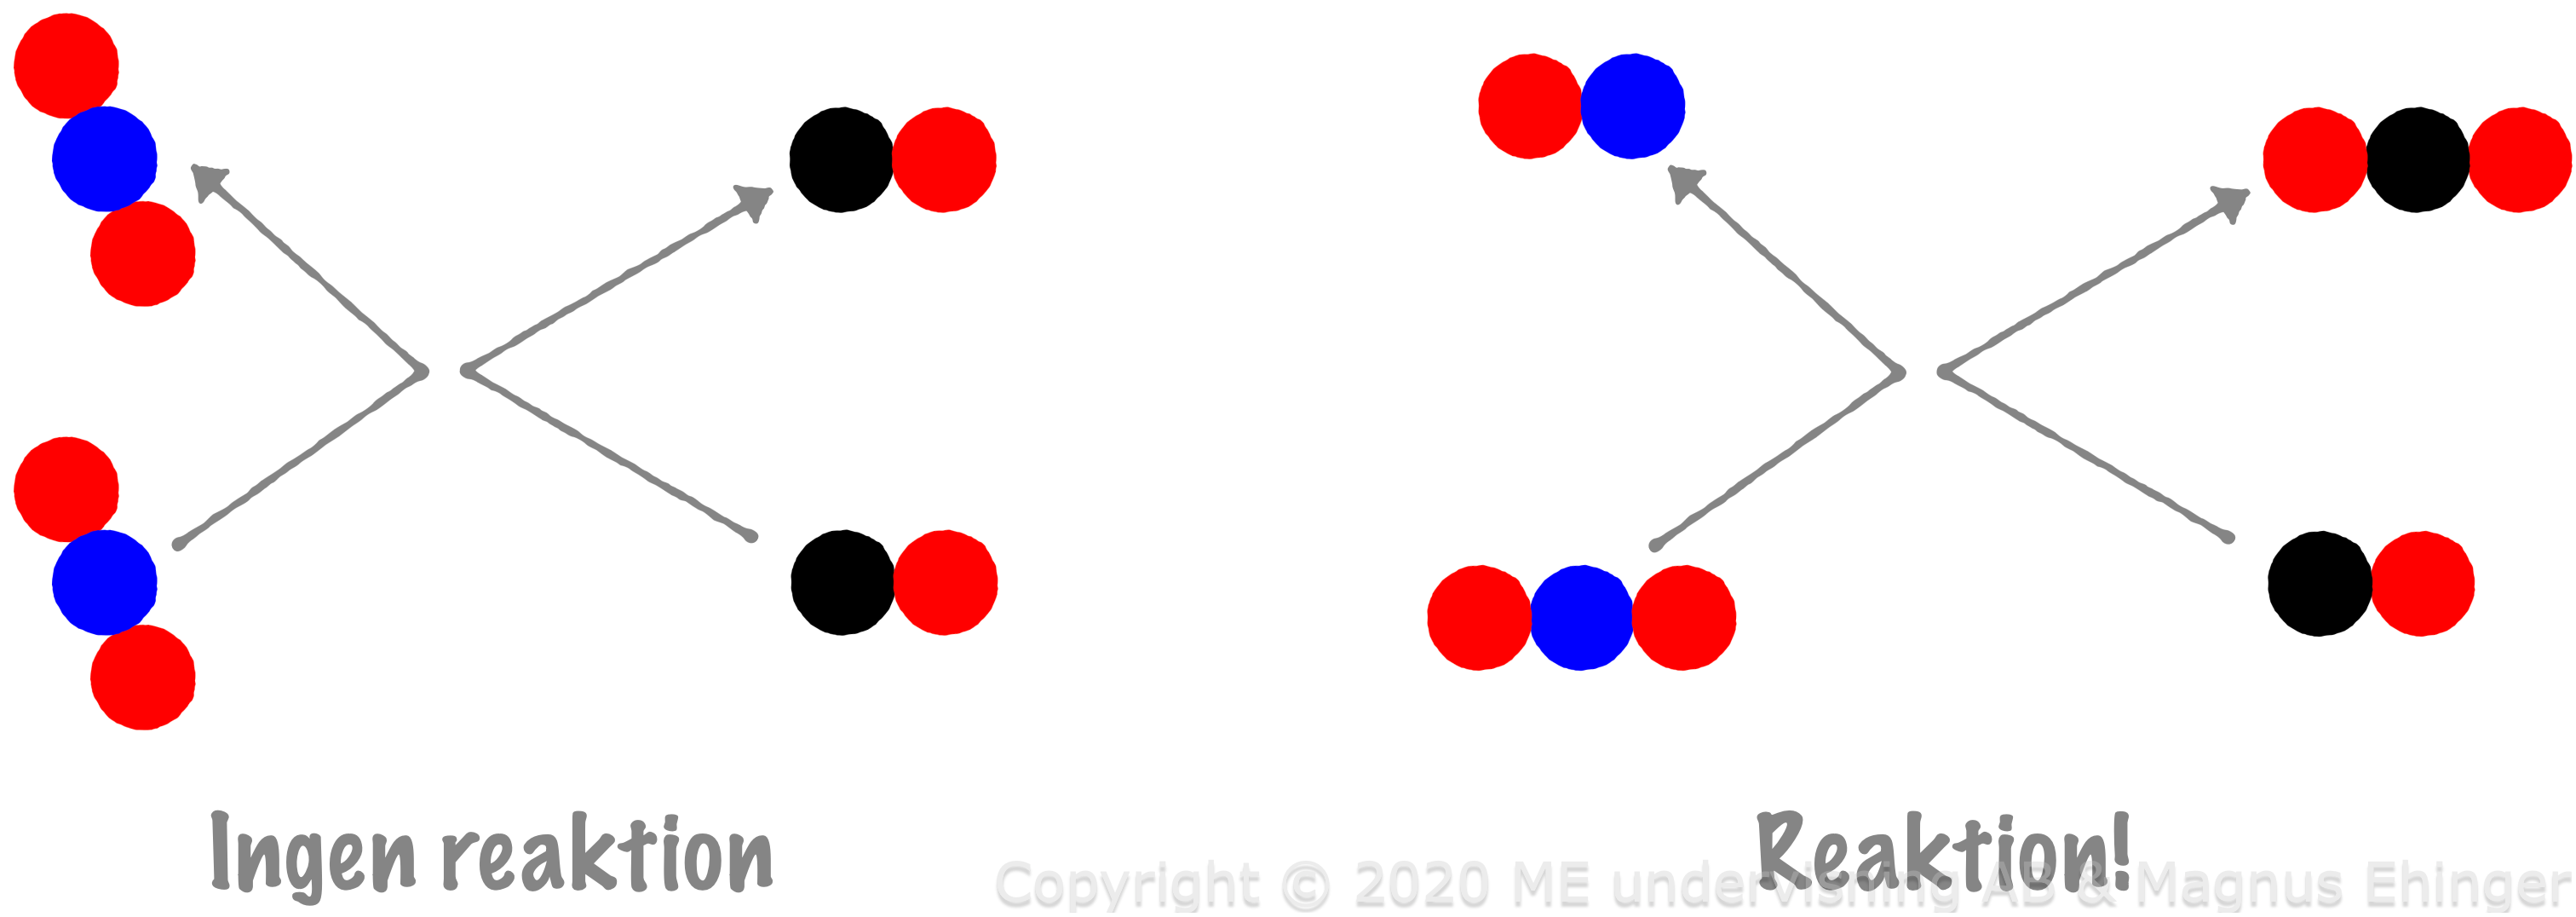 Endast om kolatomen i CO krockar med en av syreatomerna i NO₂ sker det en reaktion.